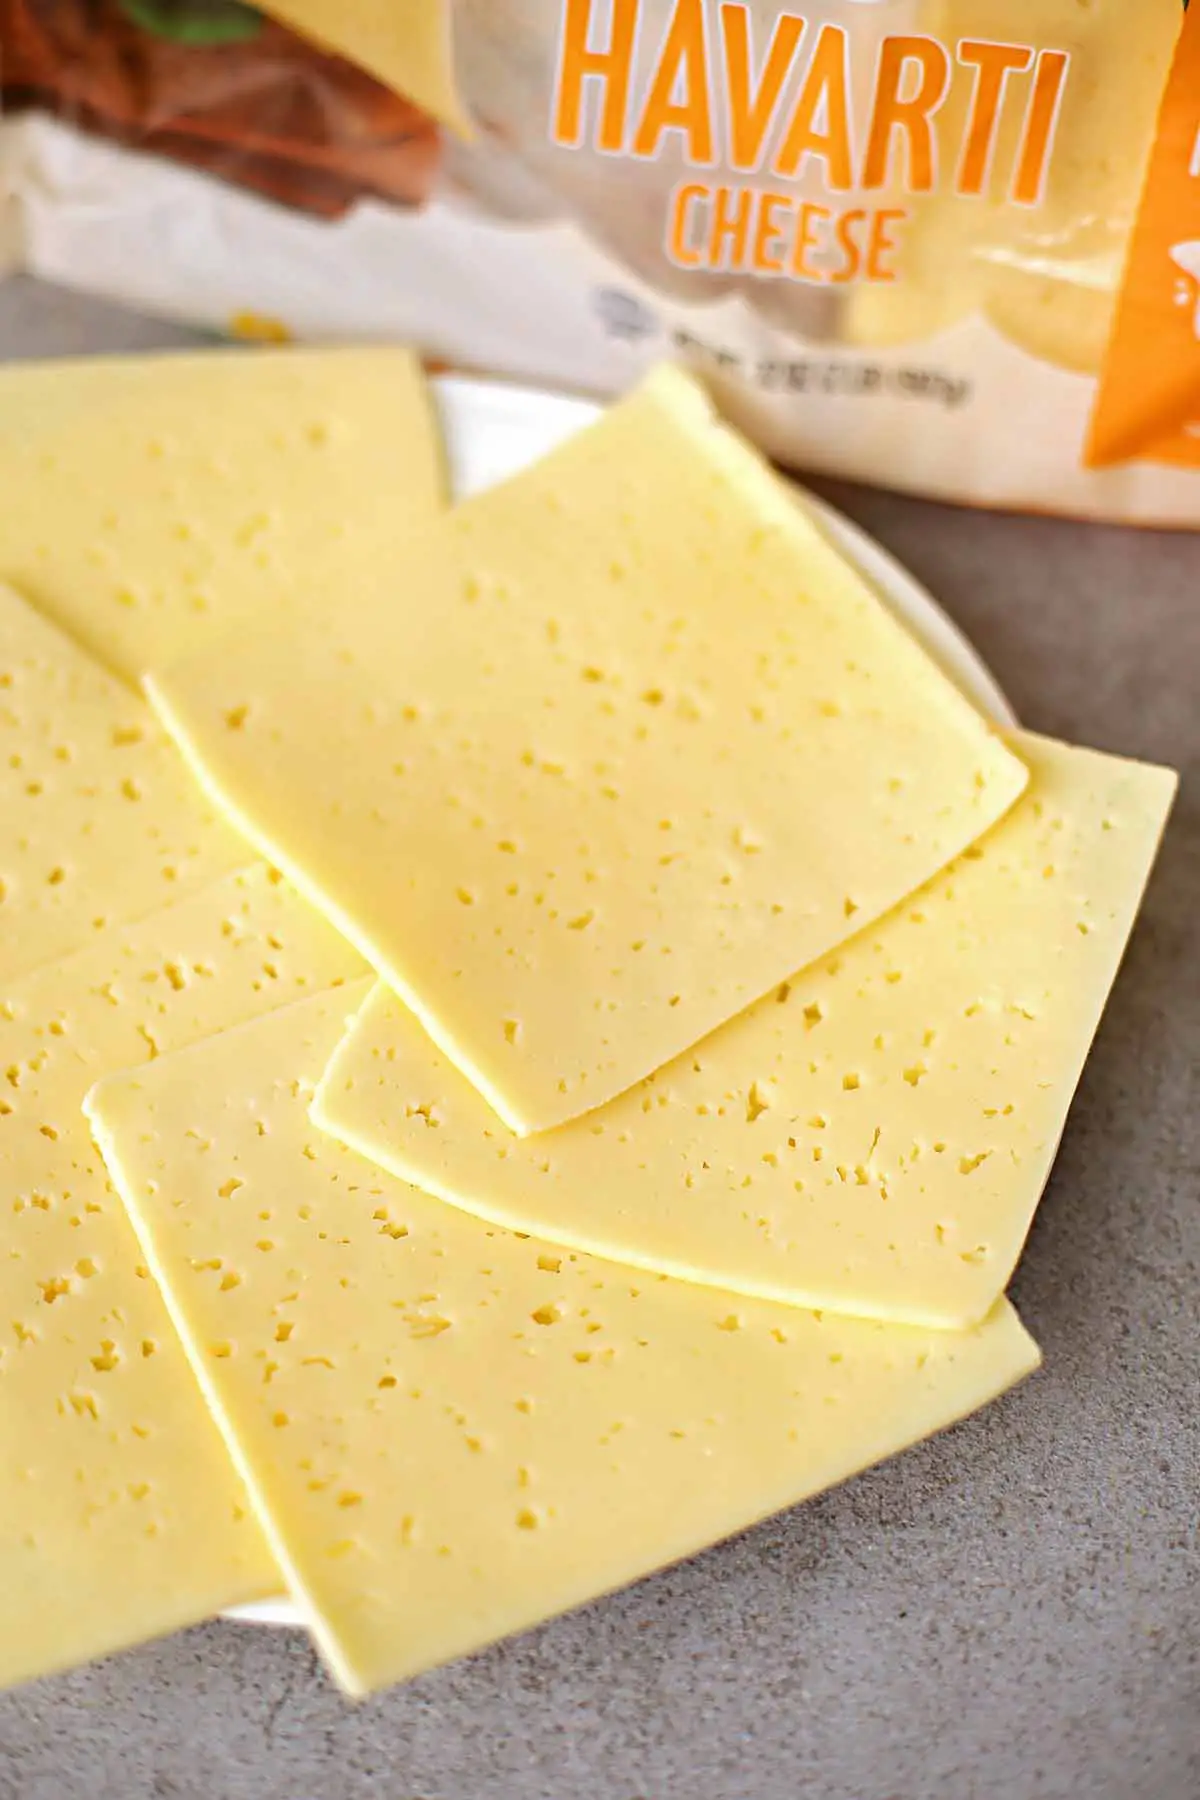 Sustituto del queso Havarti (10 alternativas ideales)